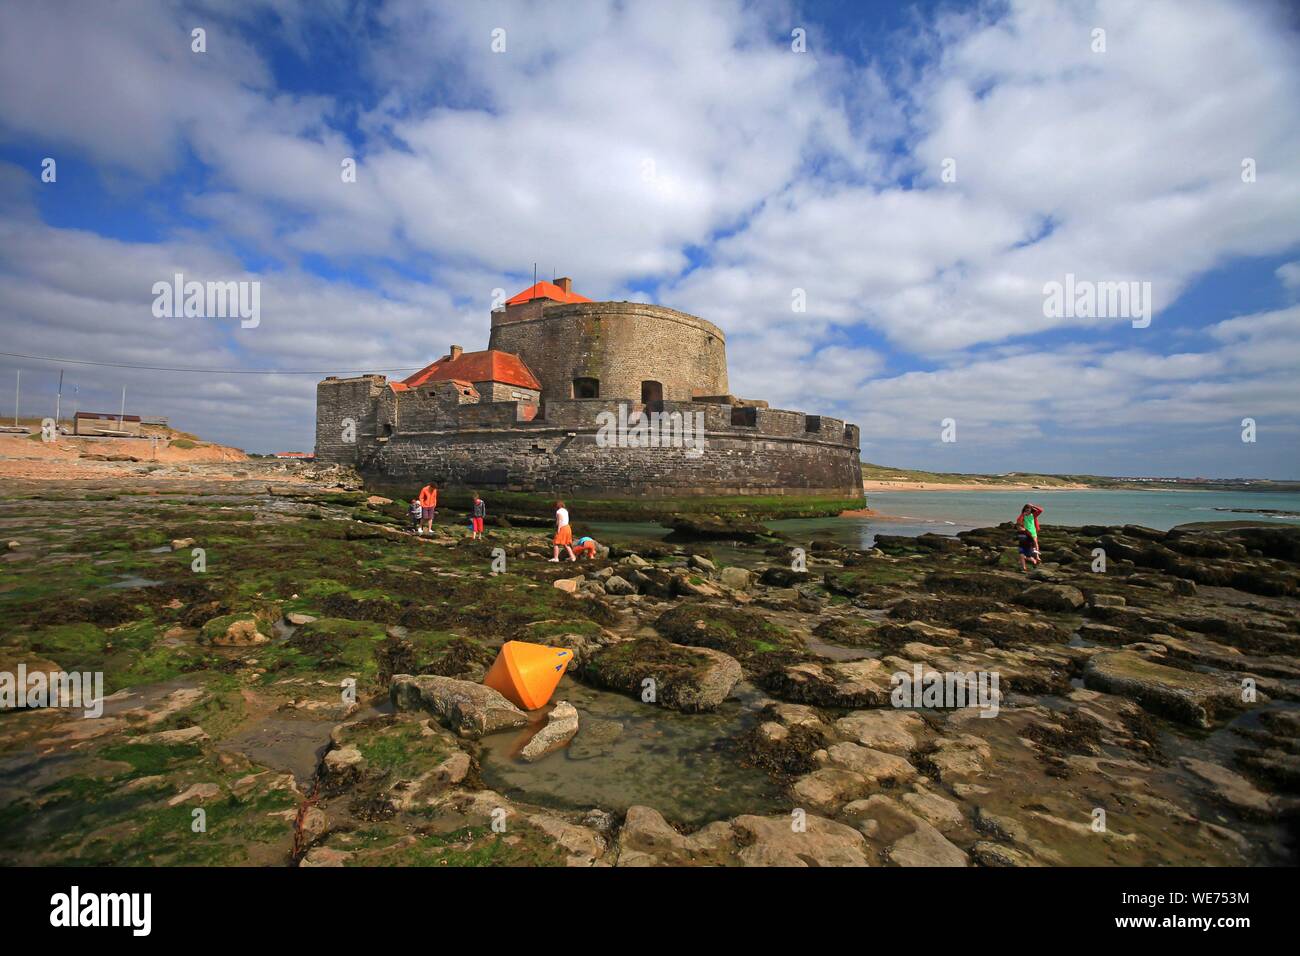 France, Pas de Calais, Ambleteuse, Fort Mahon, built under Louis XIV, is a historical monument Stock Photo